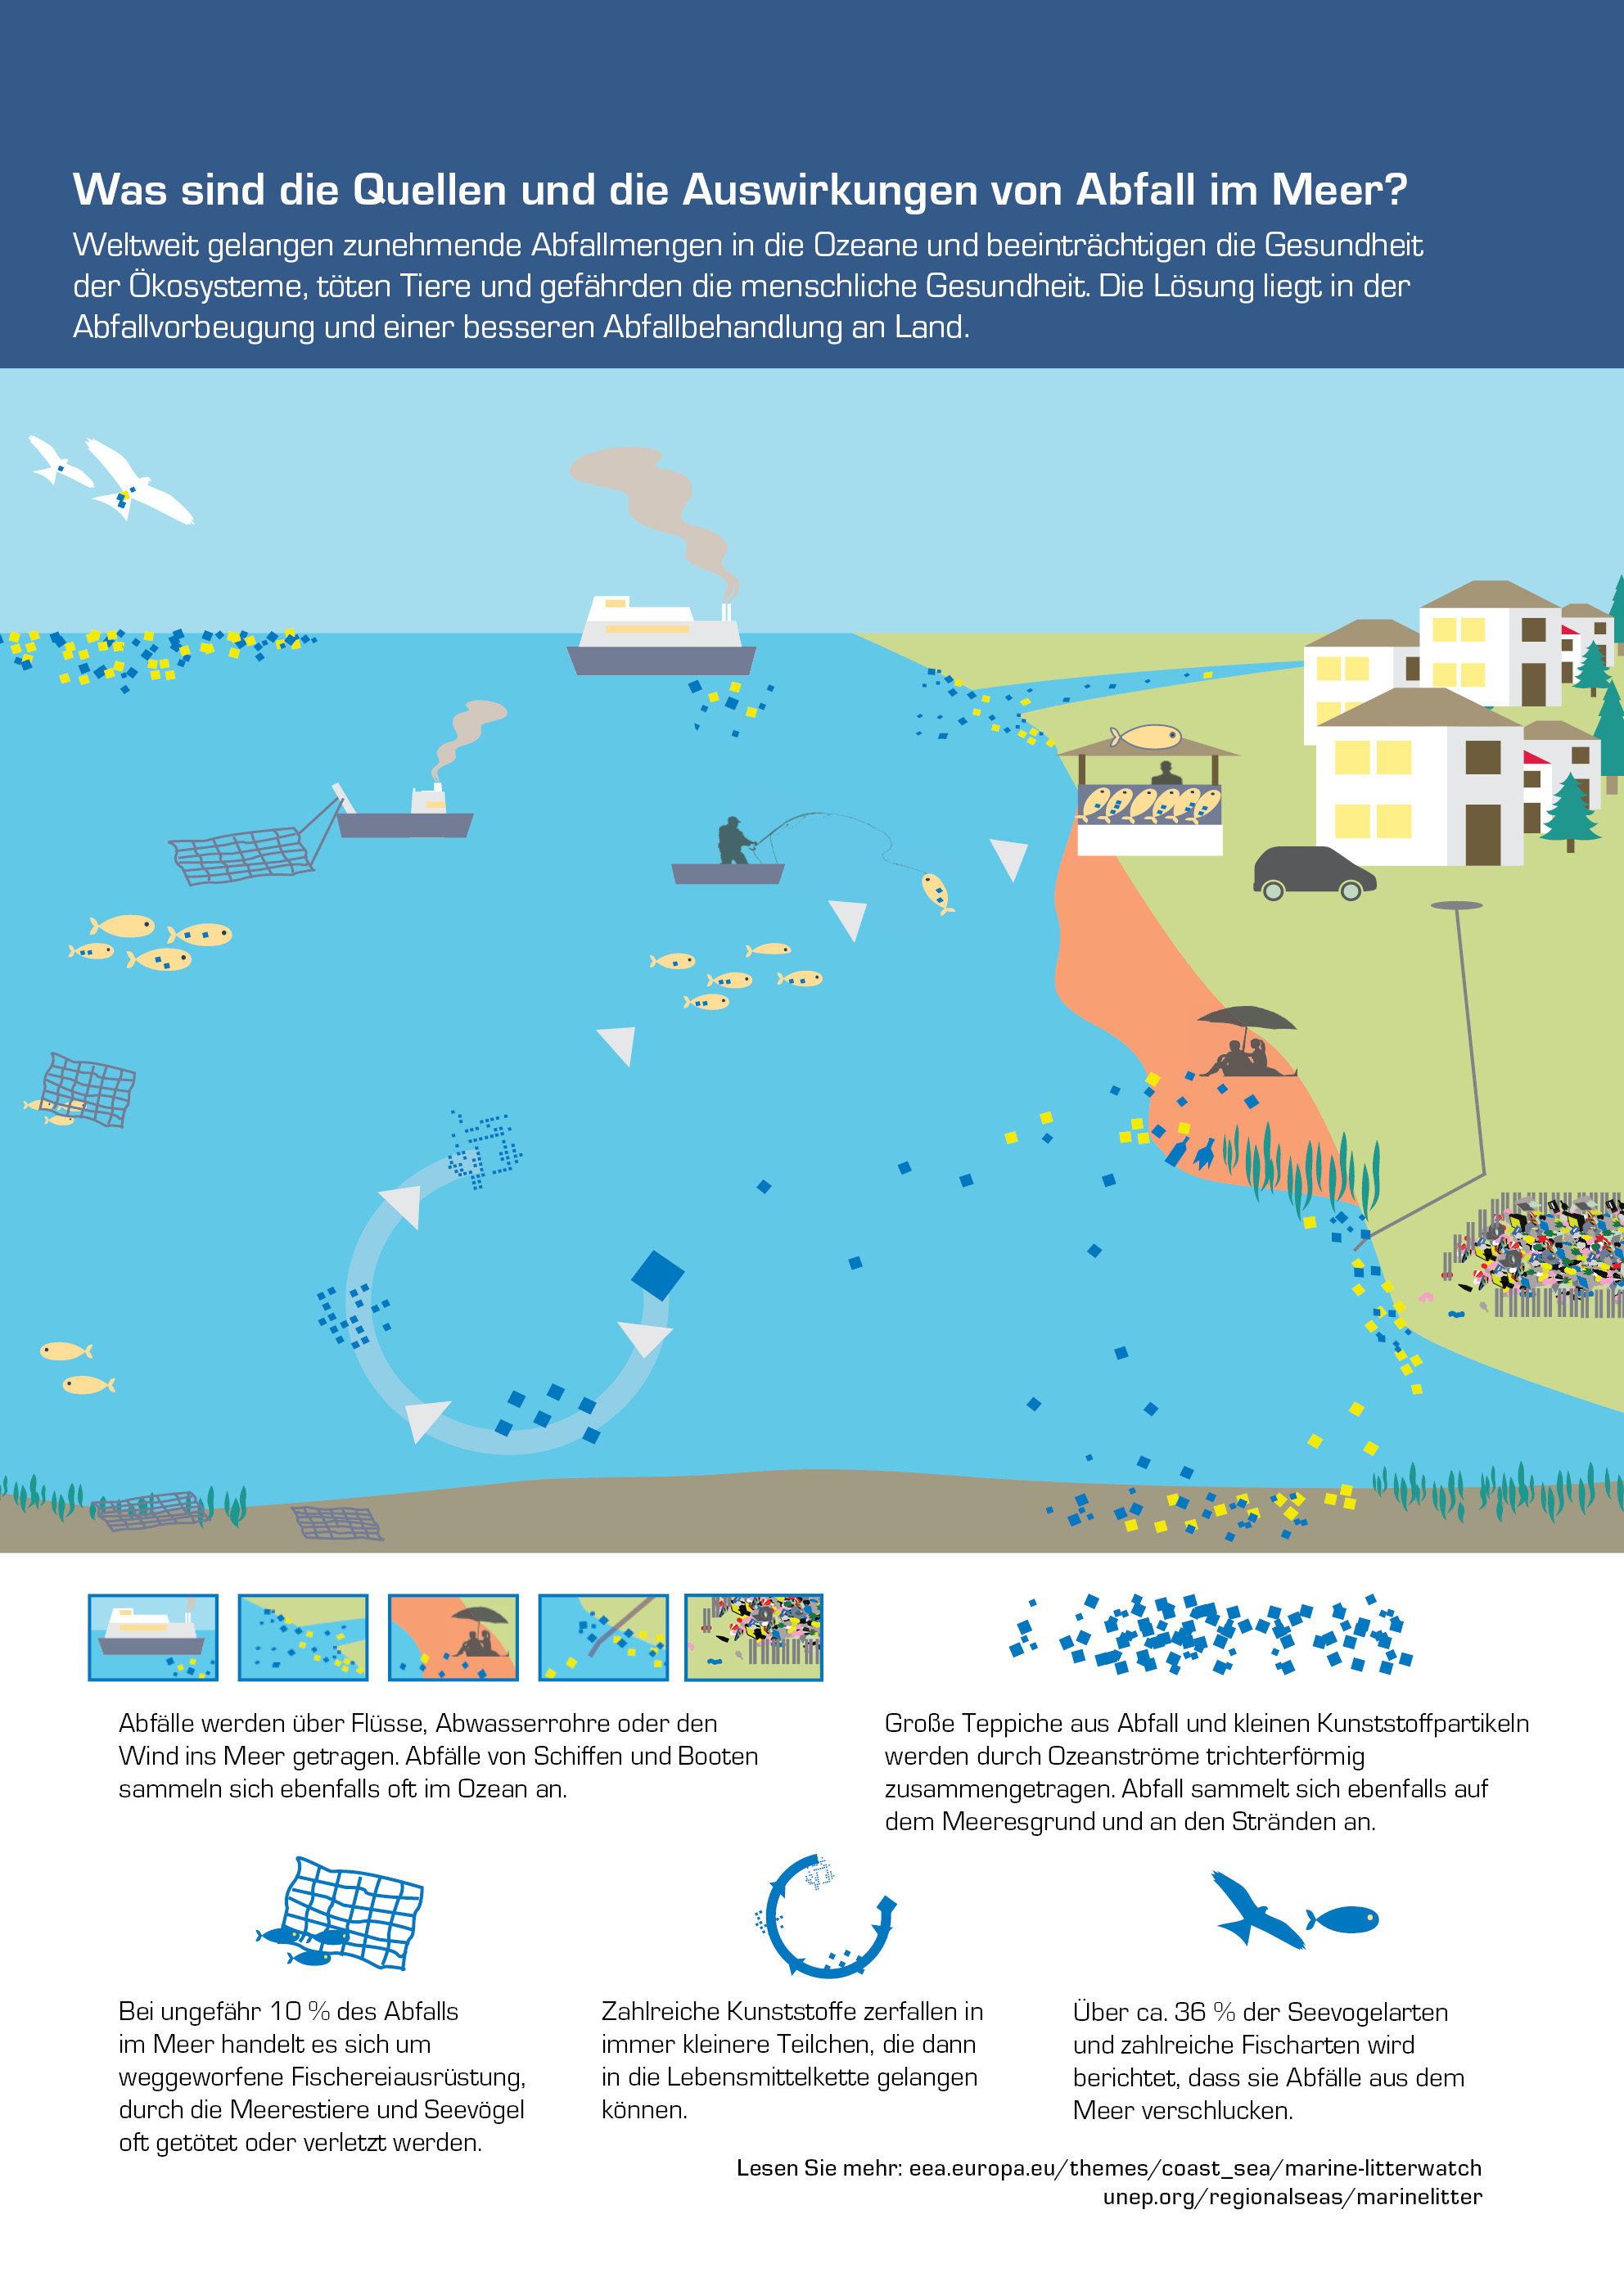 Was sind die Quellen und die Auswirkungen von Abfall im Meer?